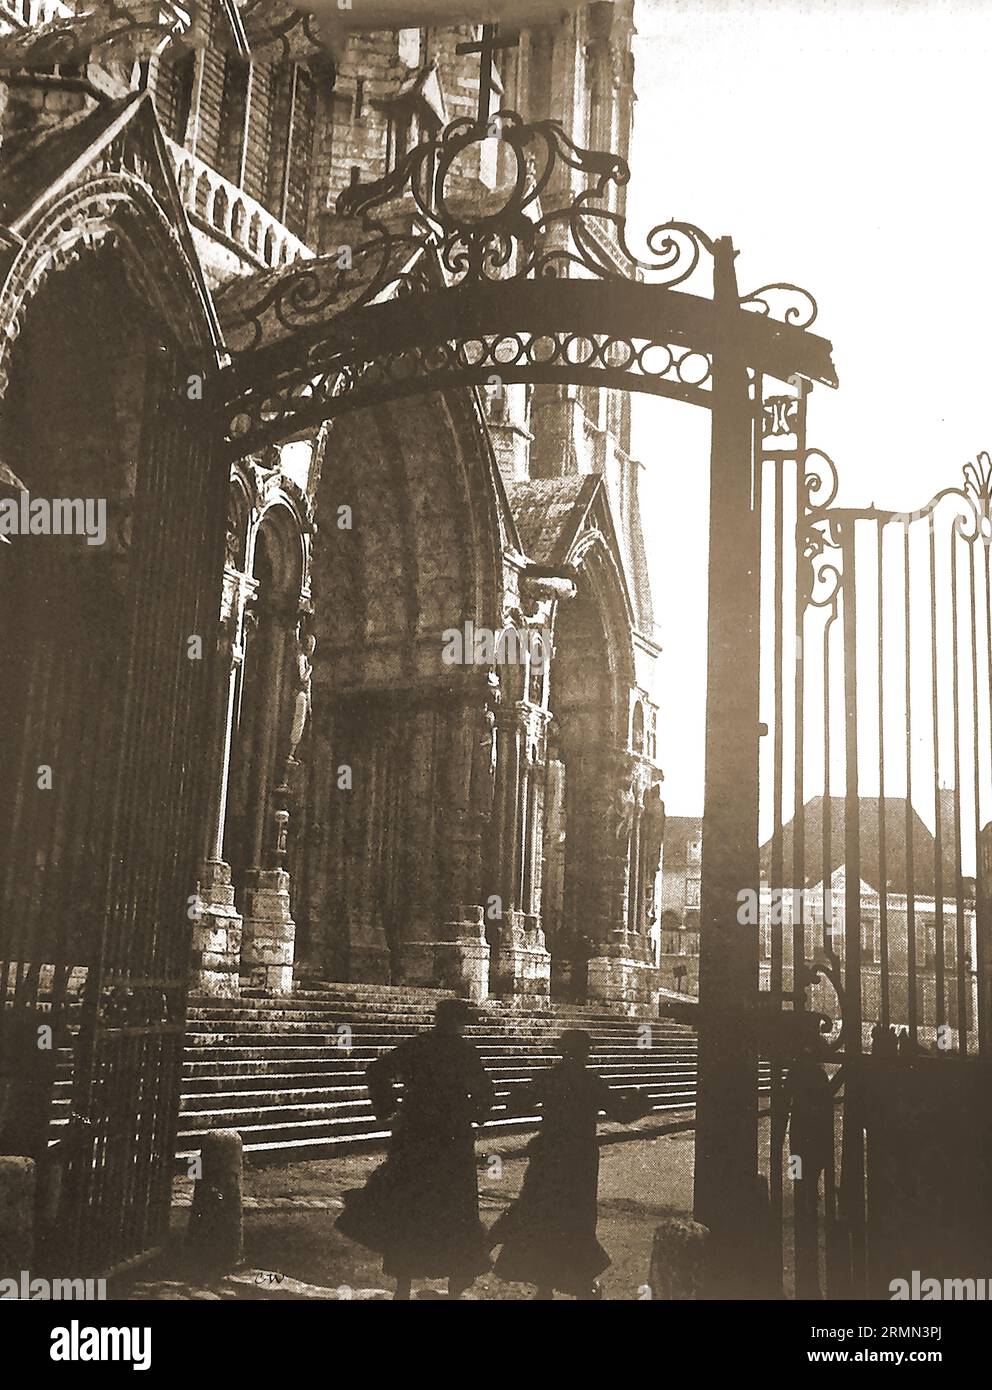 Frankreich - 1939 - Eingang zur Kathedrale von Chartres mit zwei Priestern unter gusseisernem Tor - Frankreich - 1939 - Entrée de la cathédrale de Chartres avec deux prêtres sous une porte voûtée en fonte Stockfoto